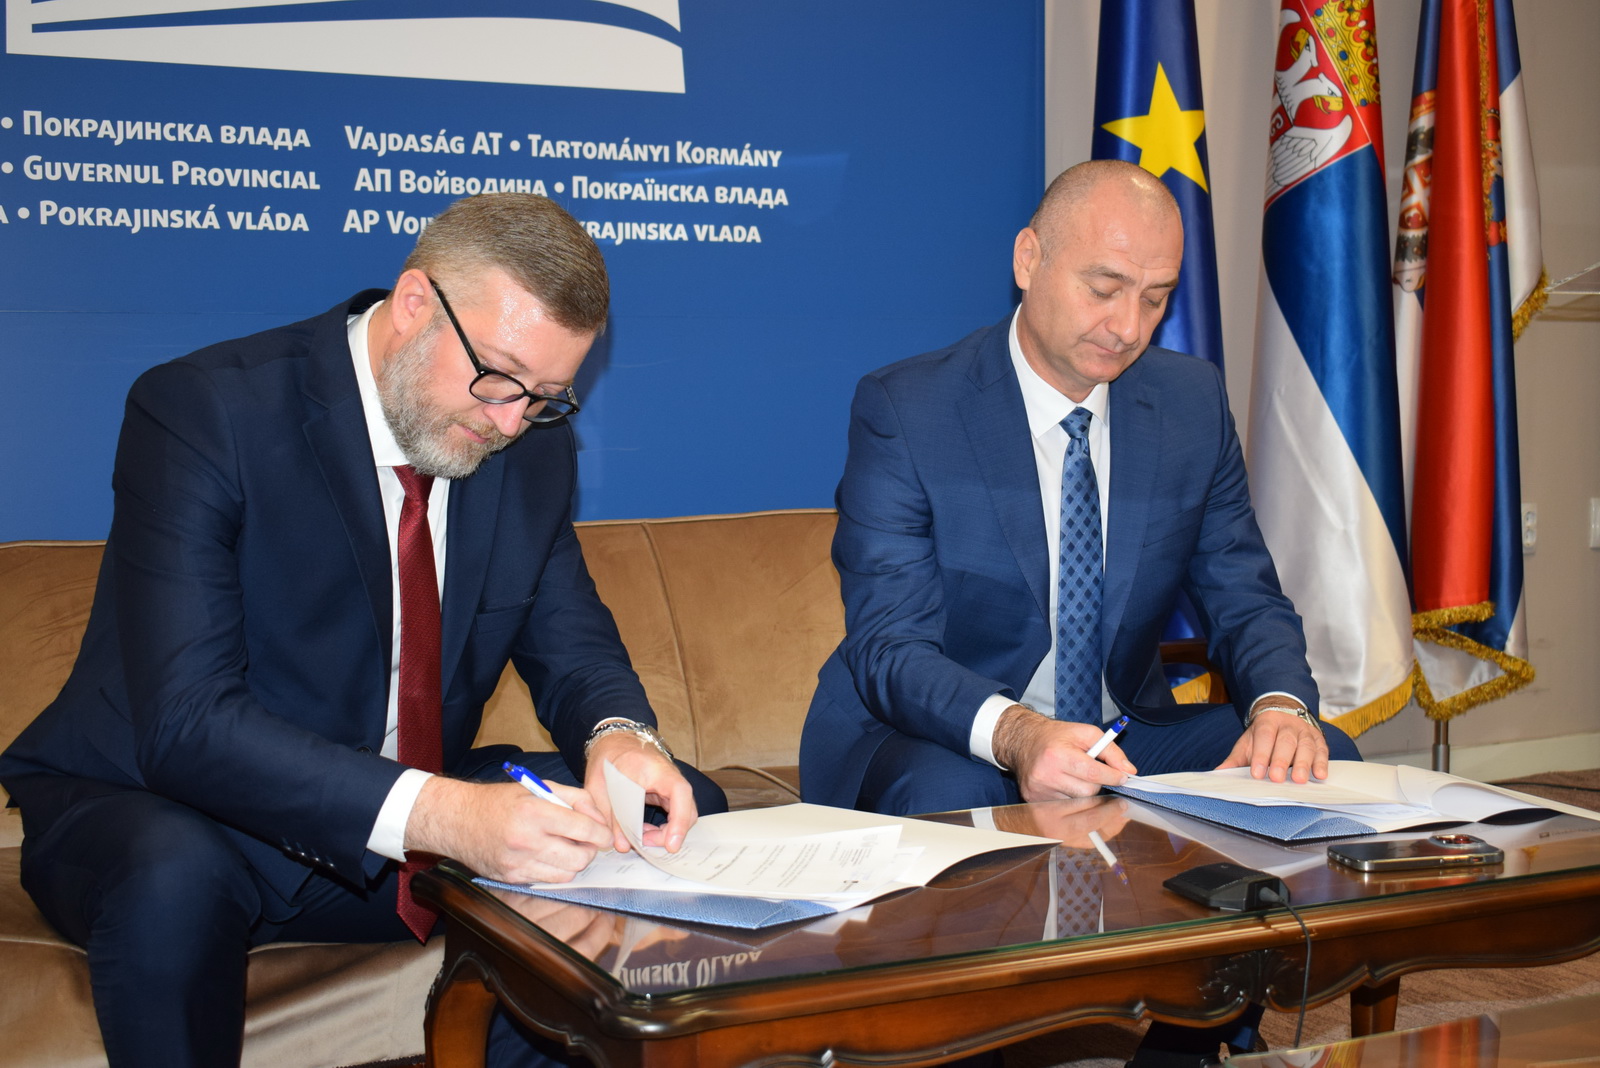 Иванишевић и Раковић потписали споразум о наставку сарадње између Секретаријата за привреду и Гаранцијског фонда АПВ у 2023. години